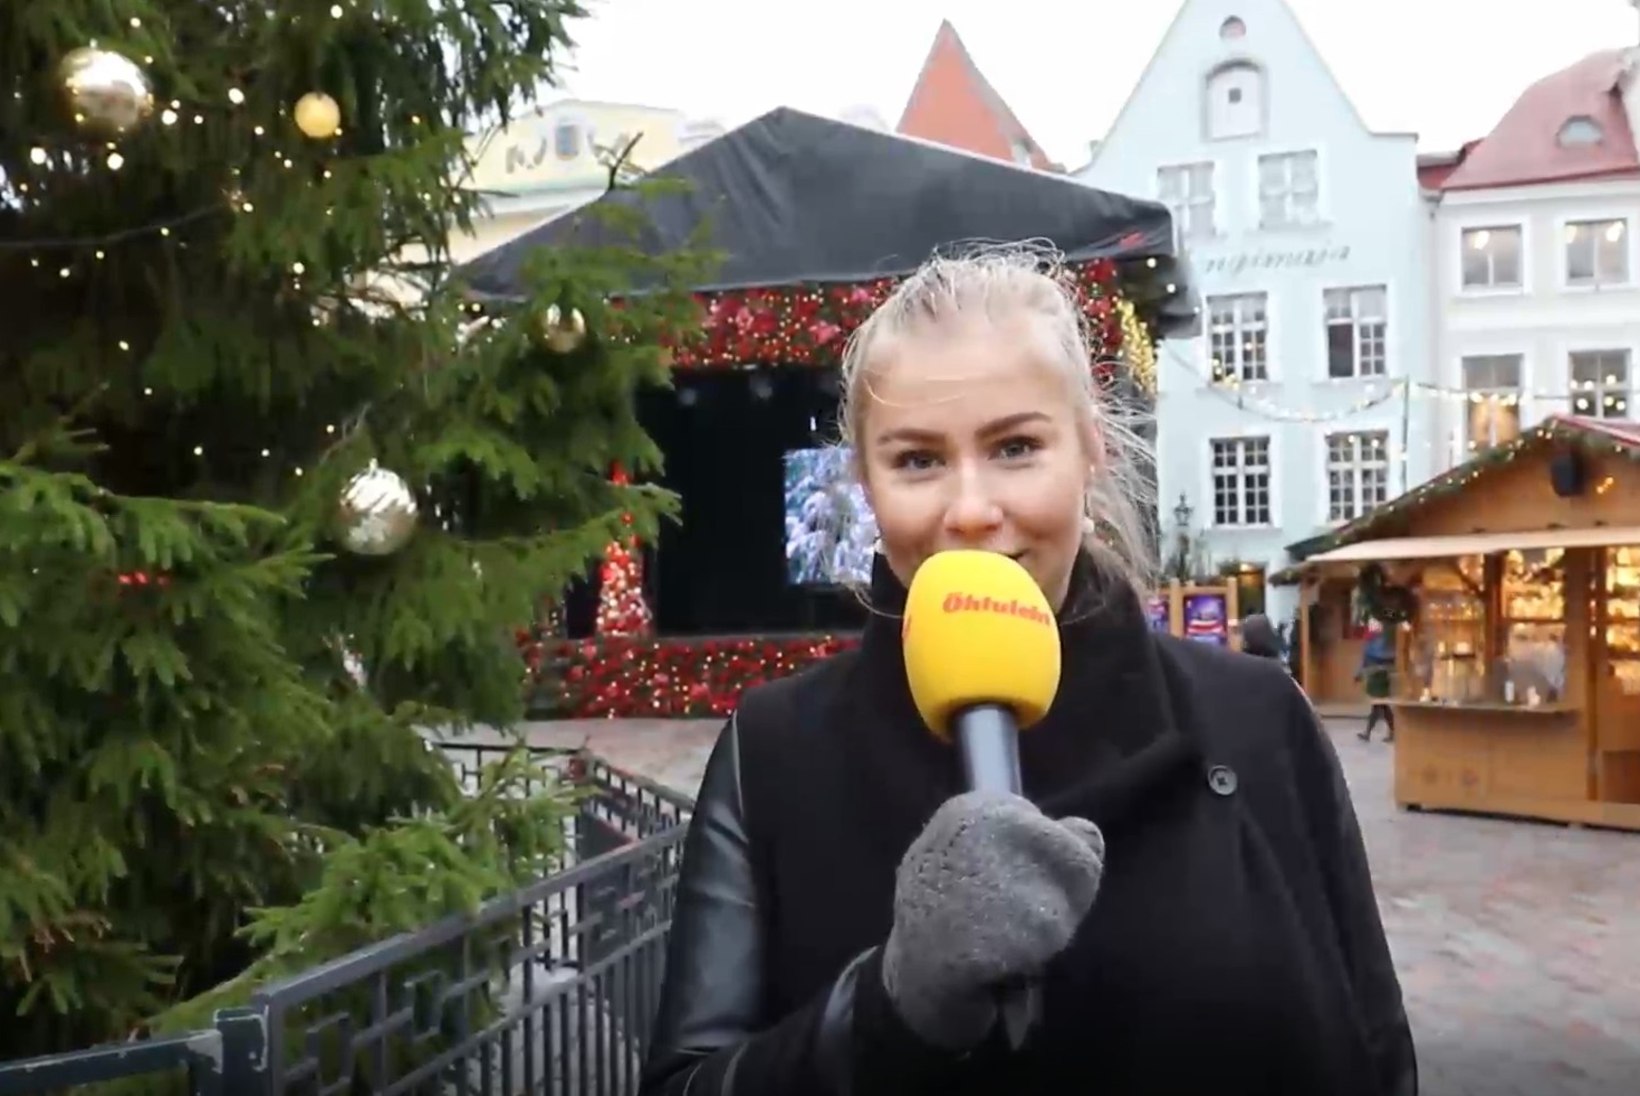 ÕHTULEHE VIDEO | Milliseid maitseid pakub jõuluturg?